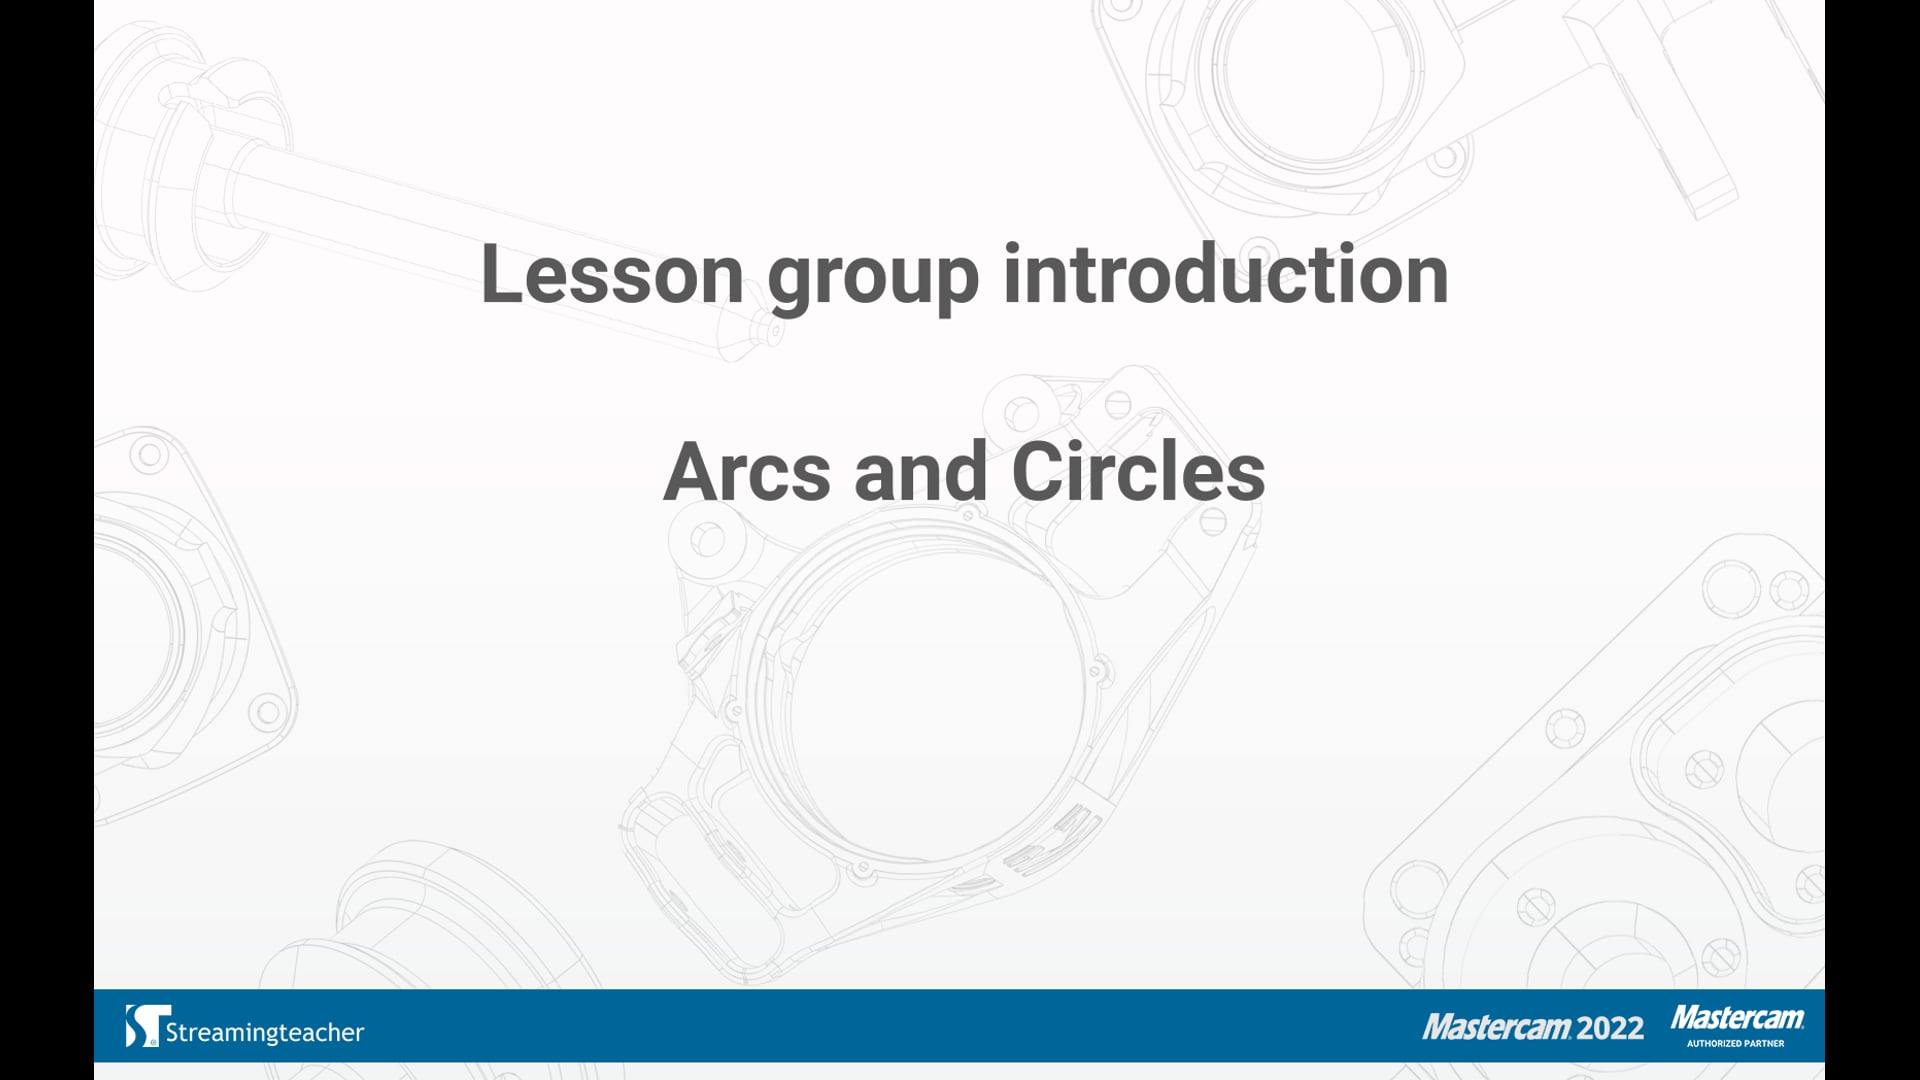 Arcs and Circles